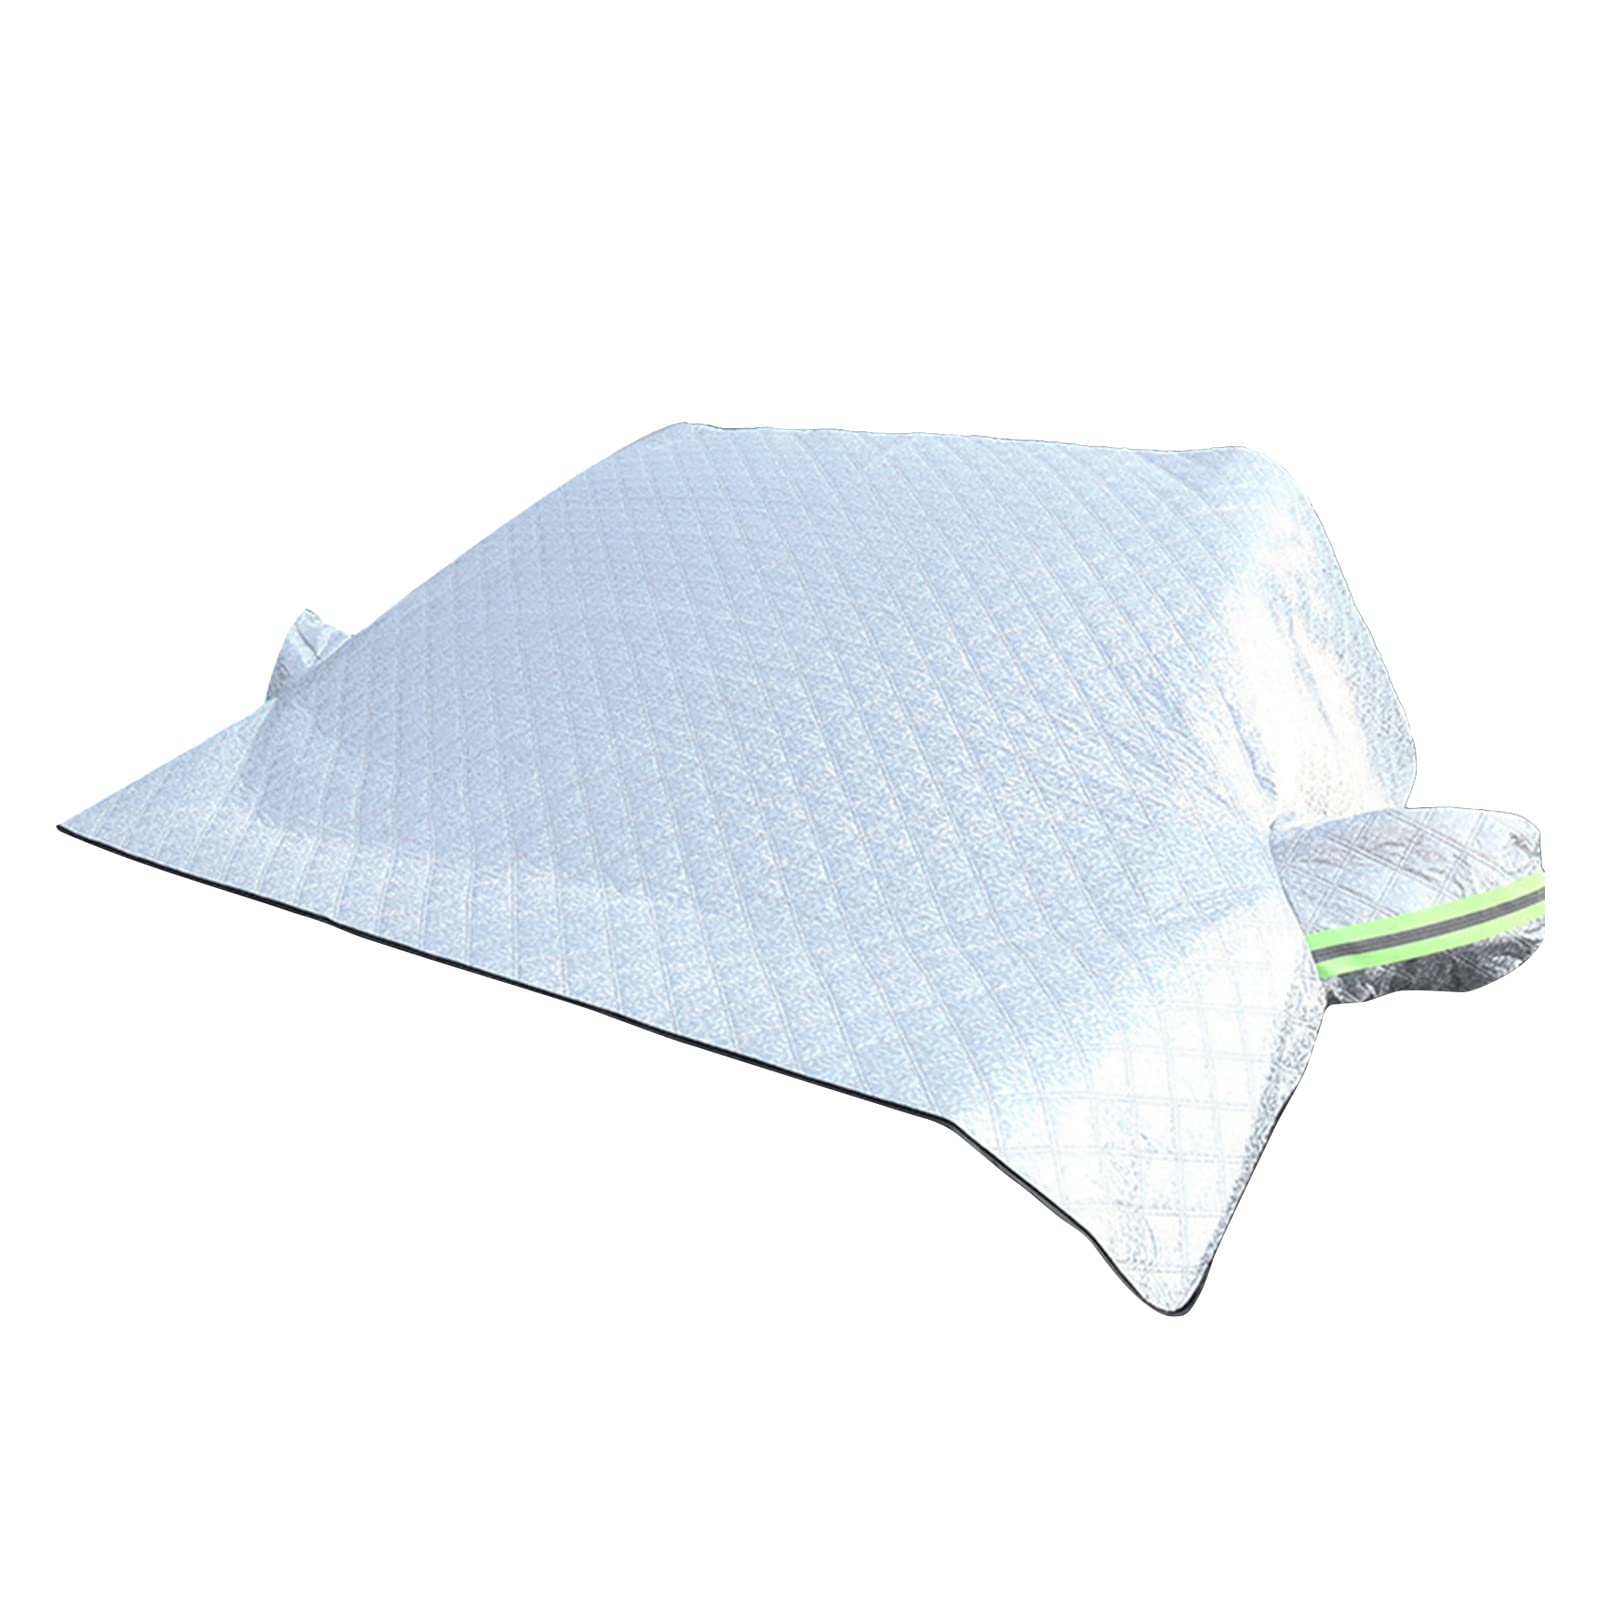 Auto Windschutzscheiben Sonnenschirm – Regenschirm Blockiert Strahlen Sonnenschutz – Sonnenschutz Magnet Fensterschutz – Frostschutz von Fhsqwernm